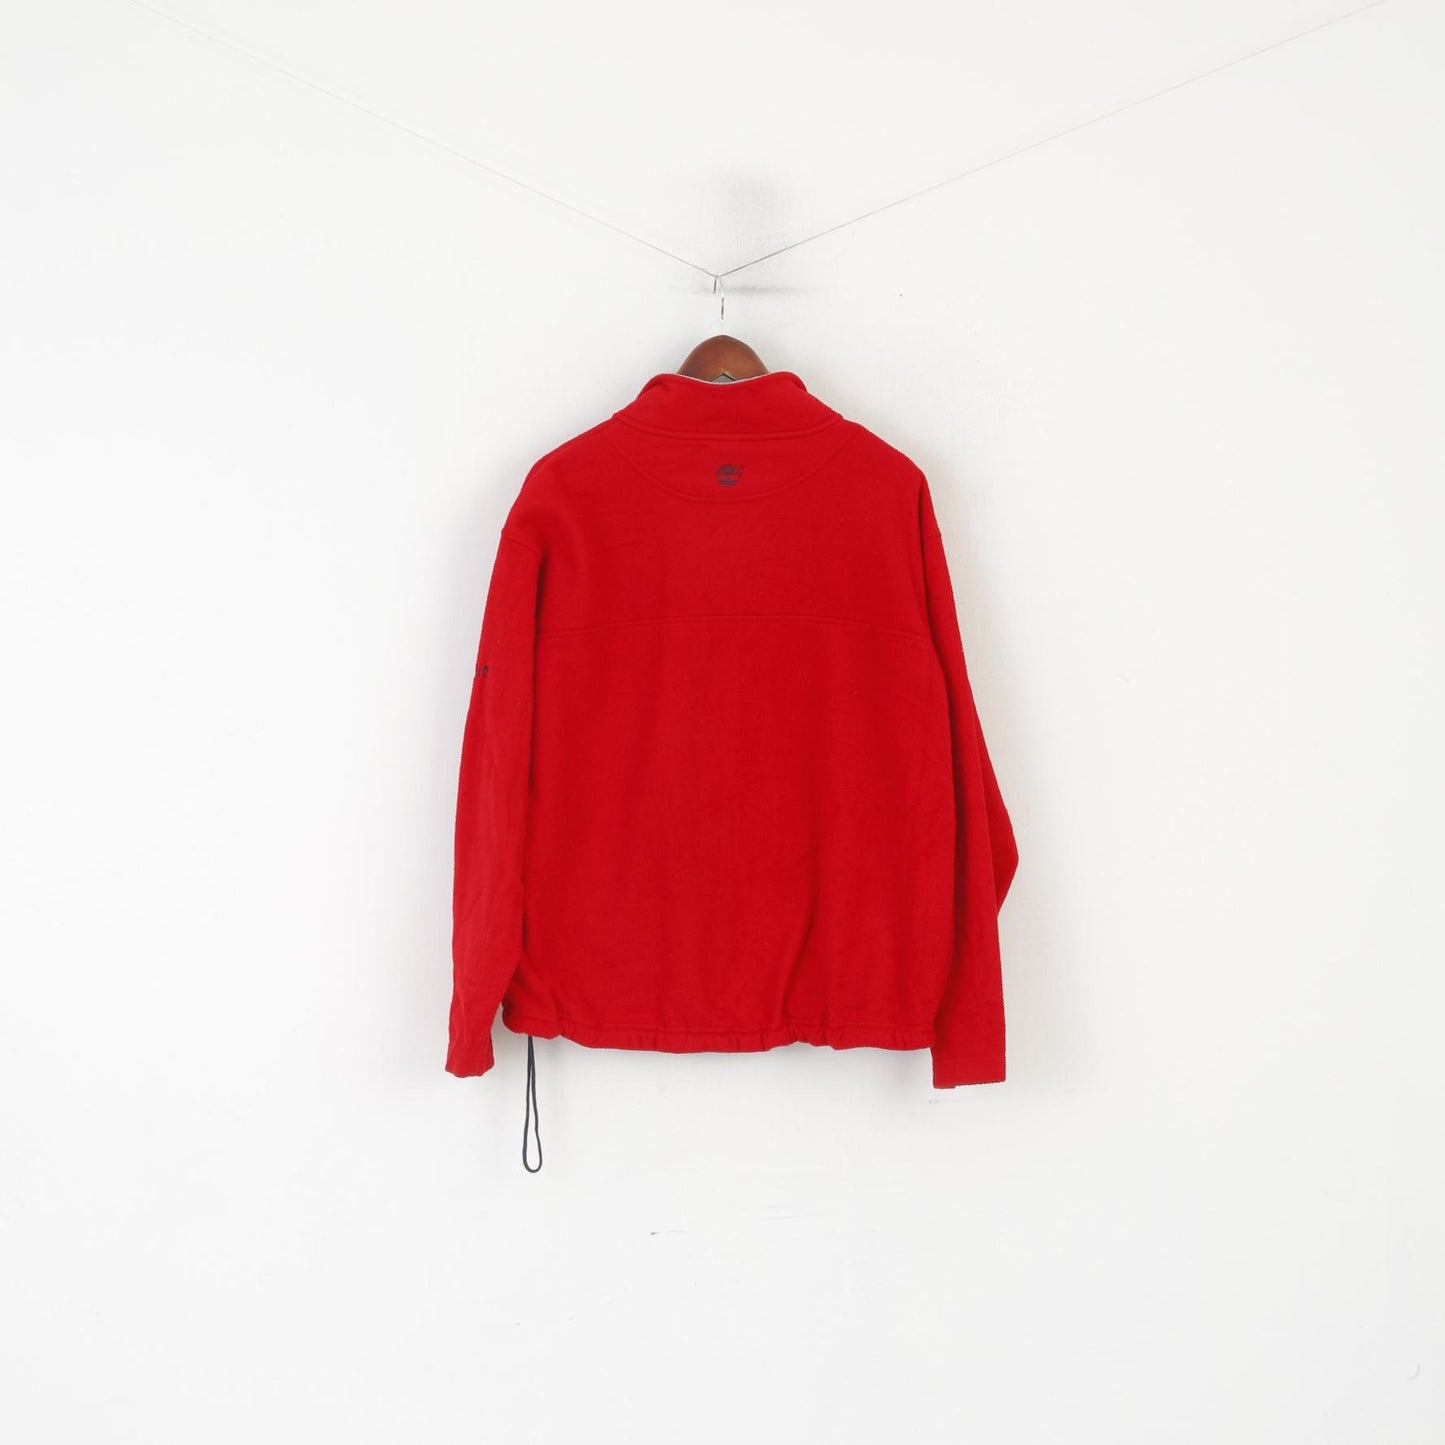 Timberland Men L Fleece Top Red Vintage Outdoor Zip Up Pockets Sweatshirt